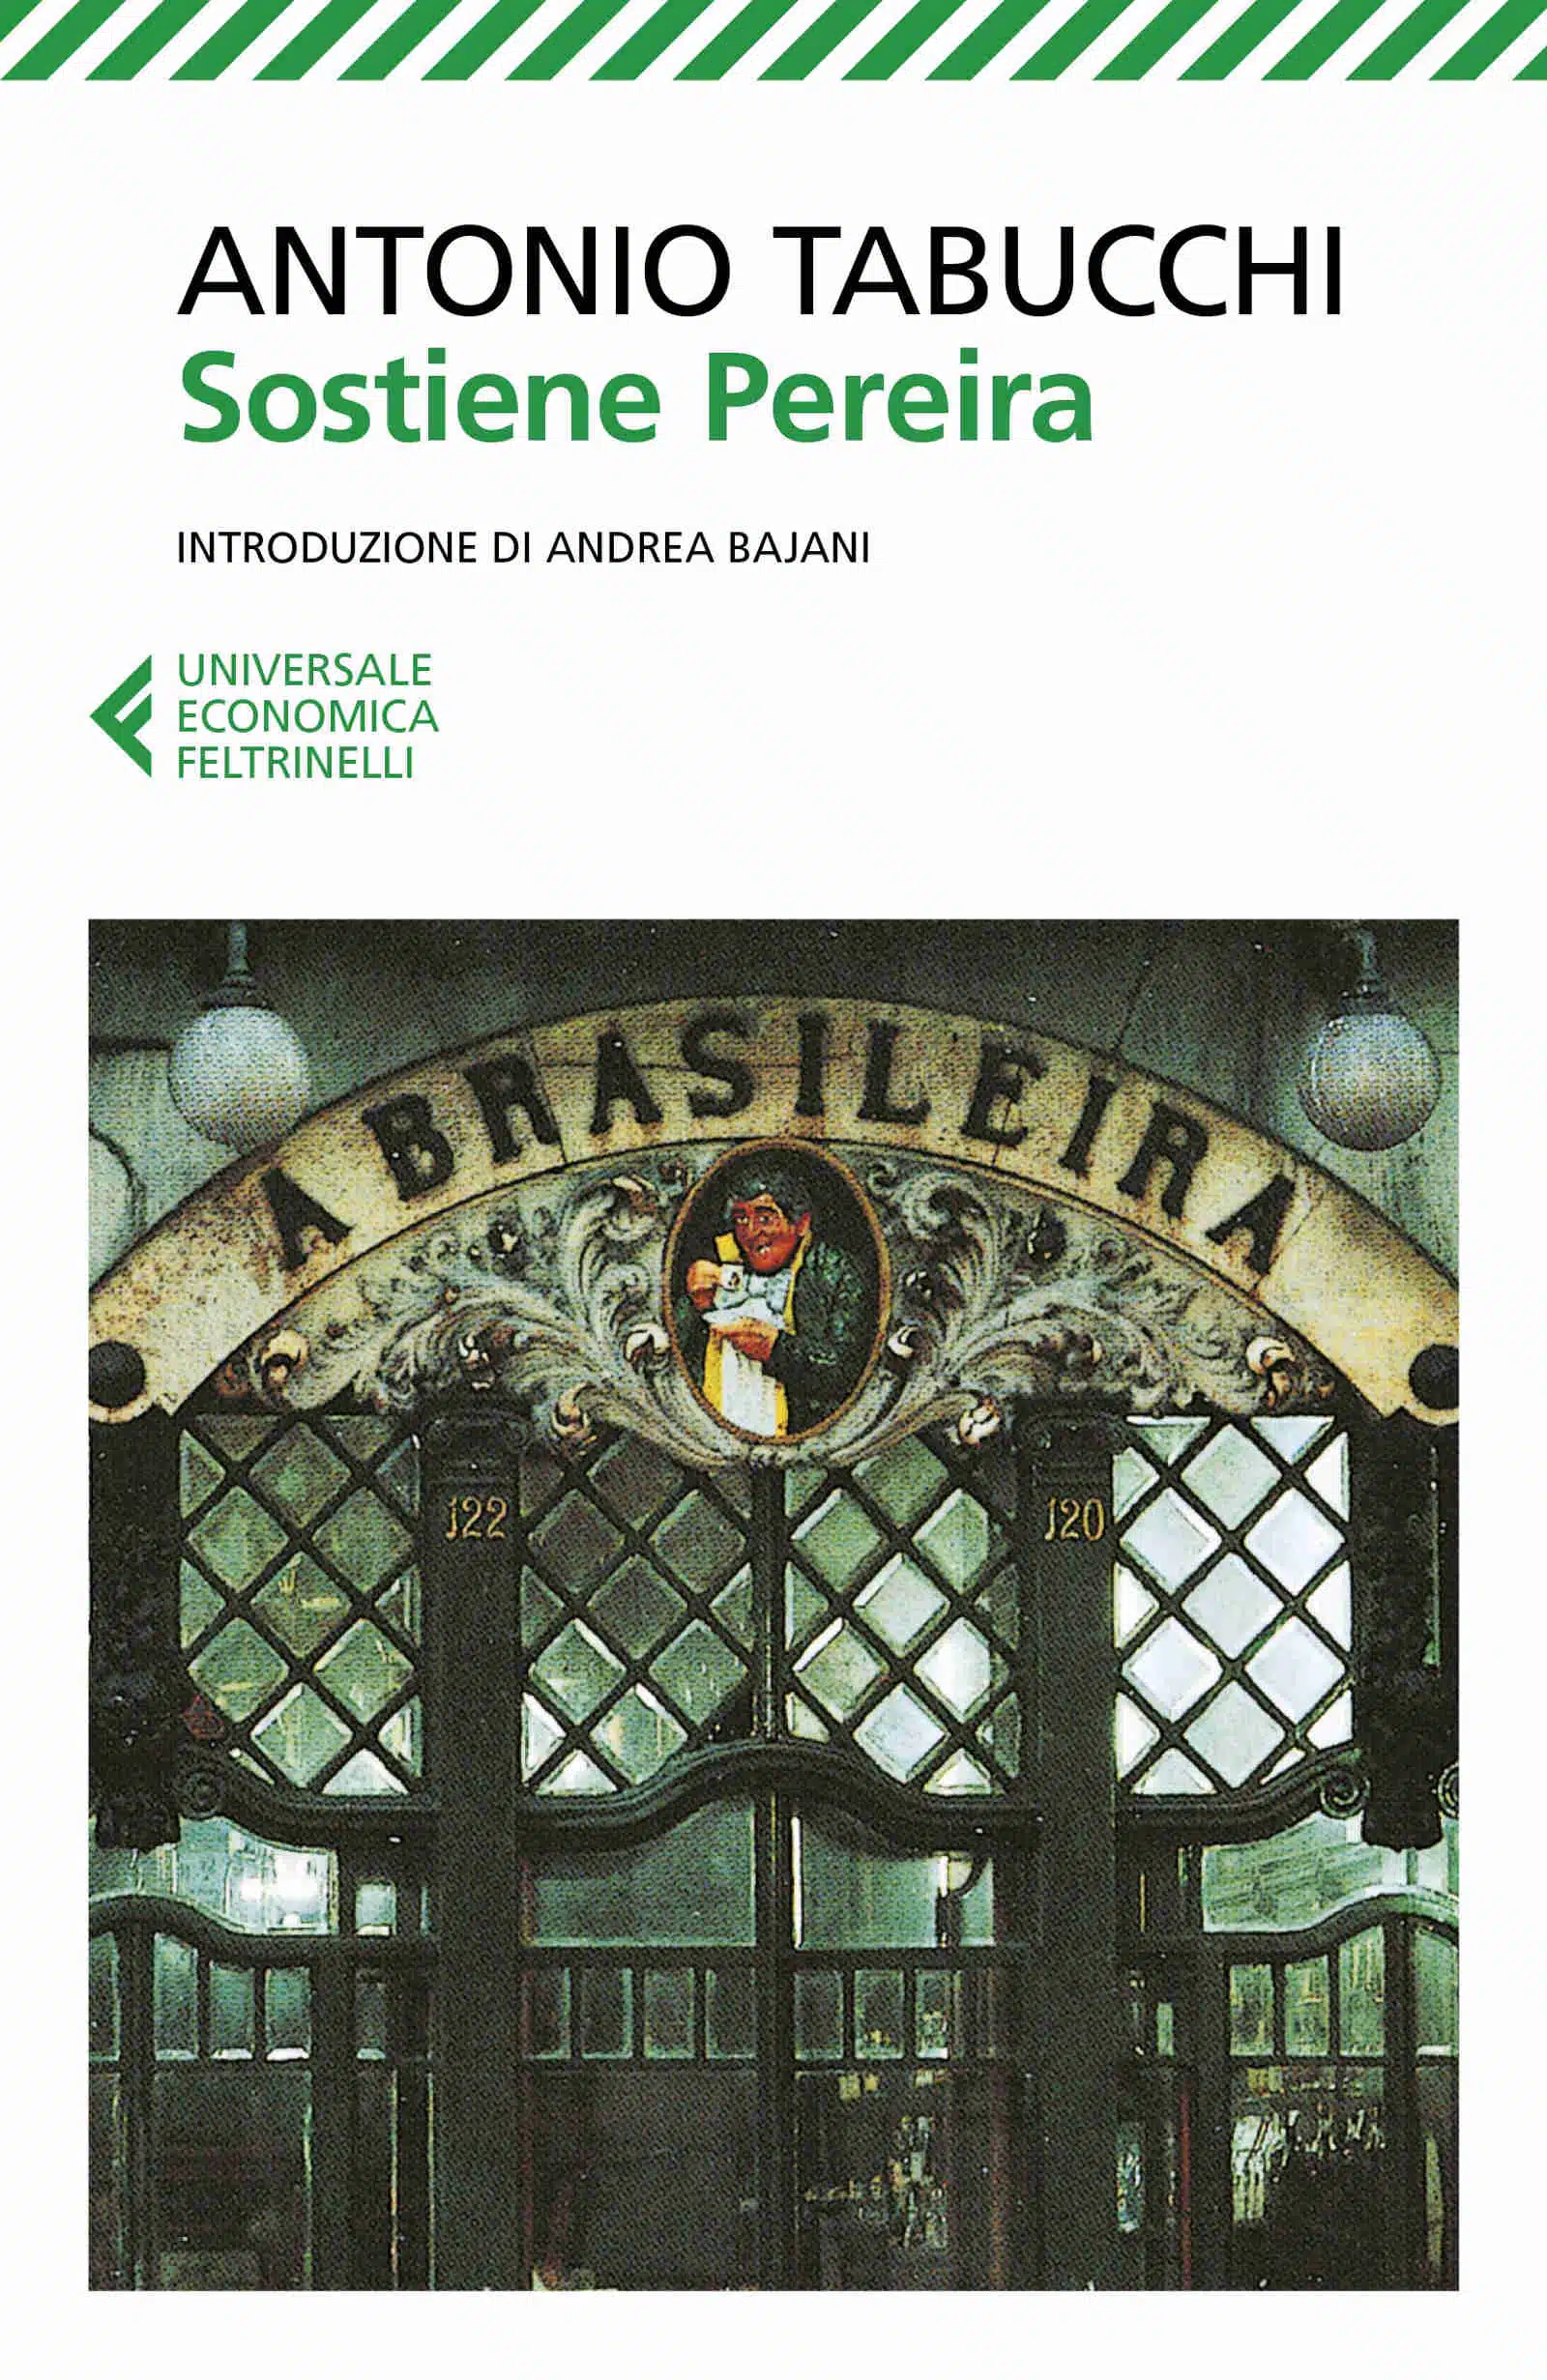 Sostiene Pereira 1994 di Antonio Tabucchi Recensione del libro Featured